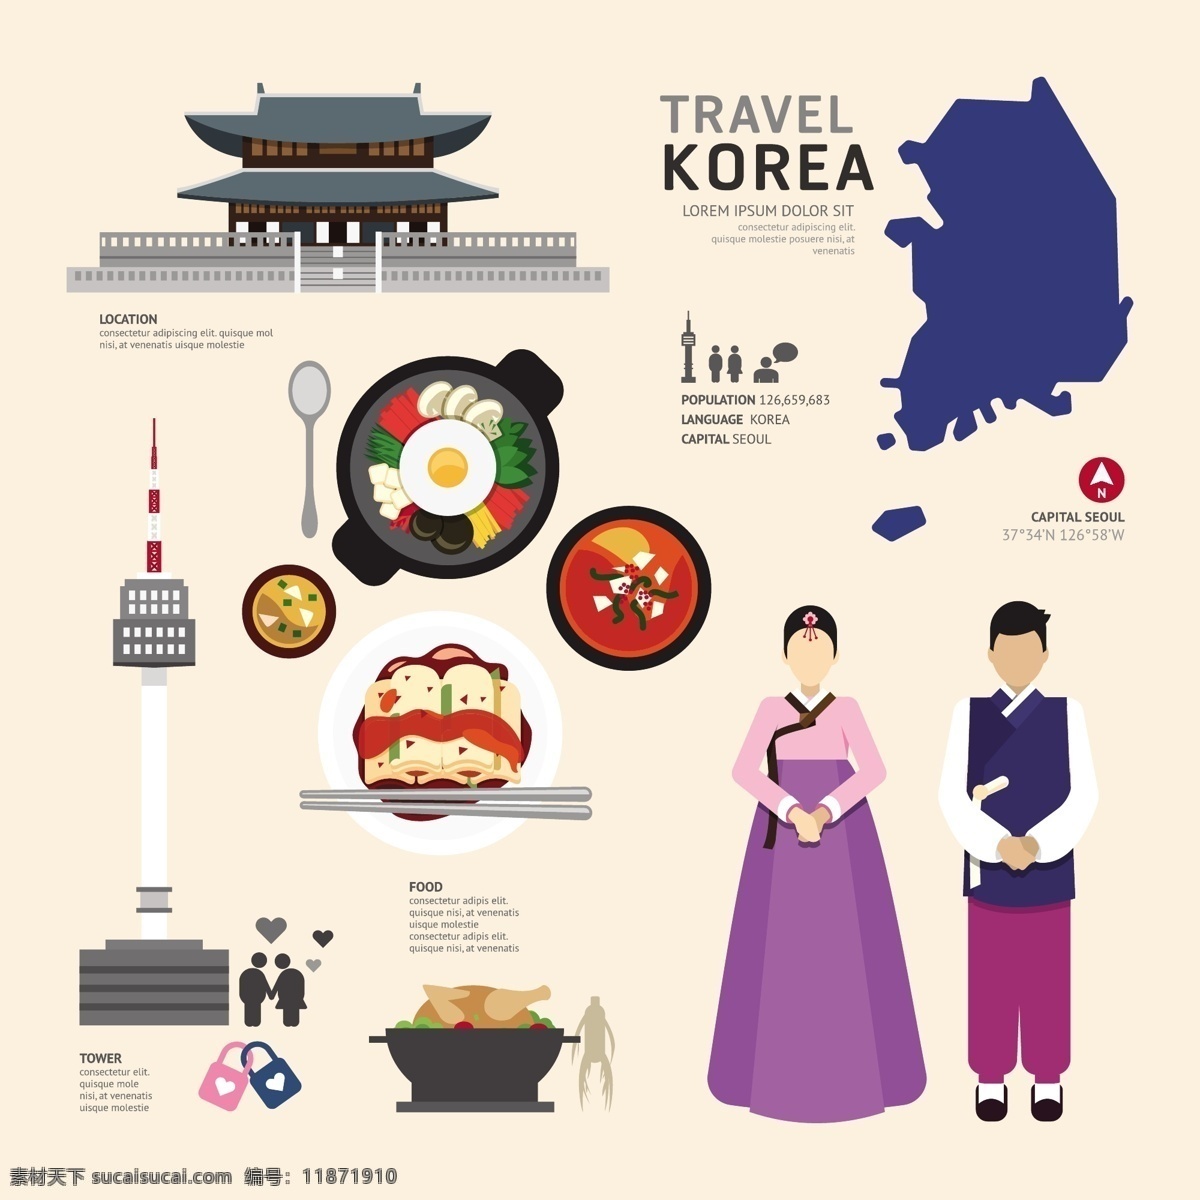 韩国文化元素 矢量素材 扁平化图标 文化特色图标 韩国旅游 旅行 旅游景点 著名景点 旅游图标 朝鲜服装 韩国料理 韩国美食 eps格式 矢量图 卡通设计